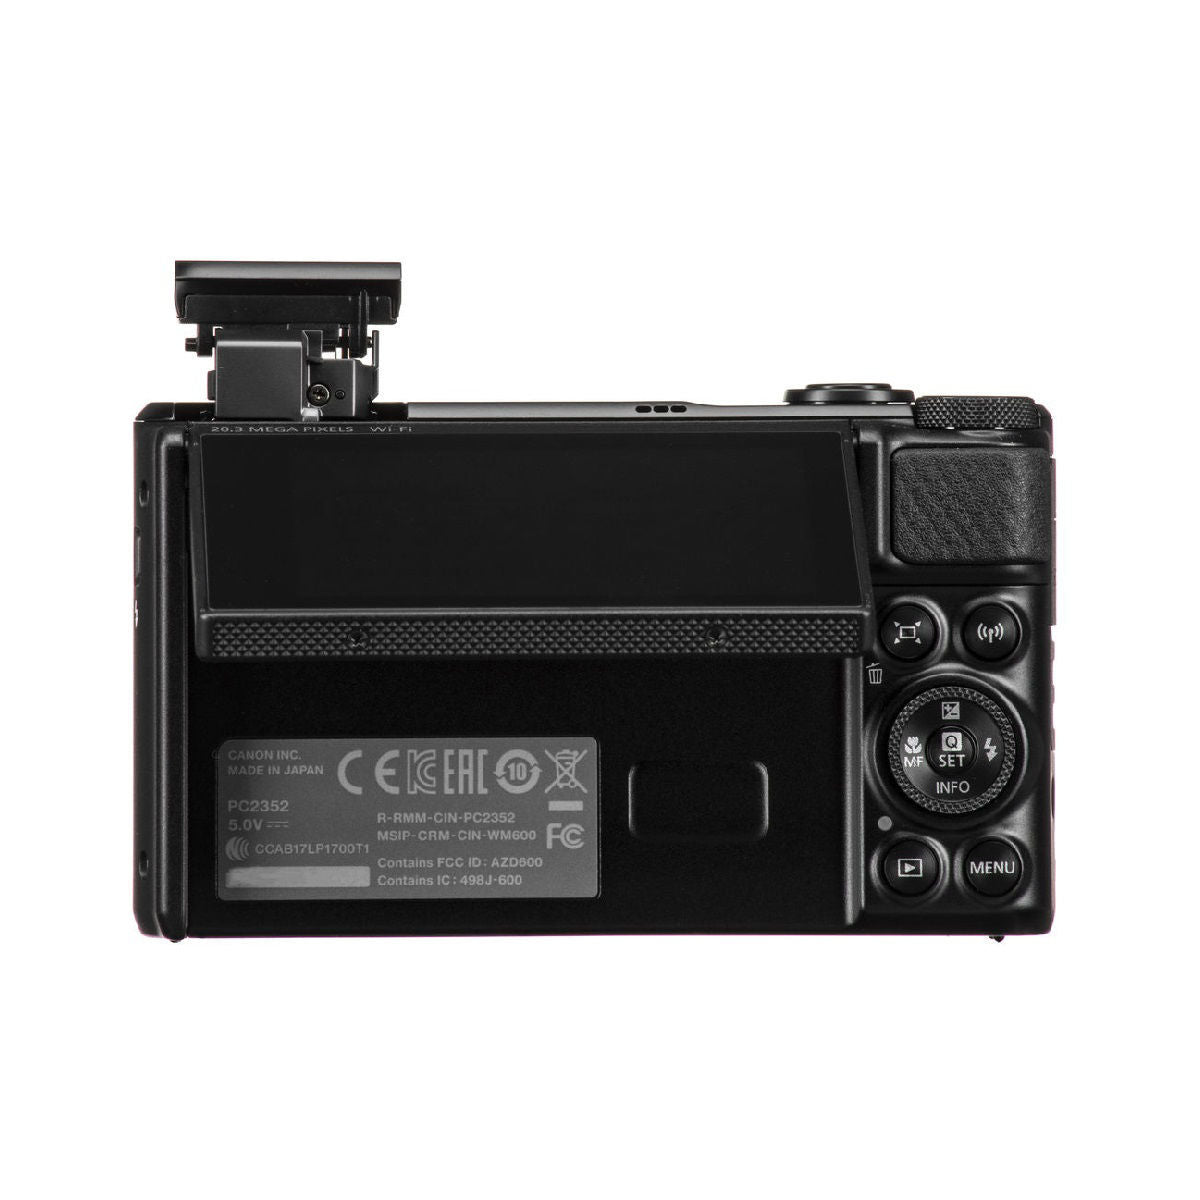 कैनन पॉवरशॉट Sx740 Hs डिजिटल कैमरा ब्लैक